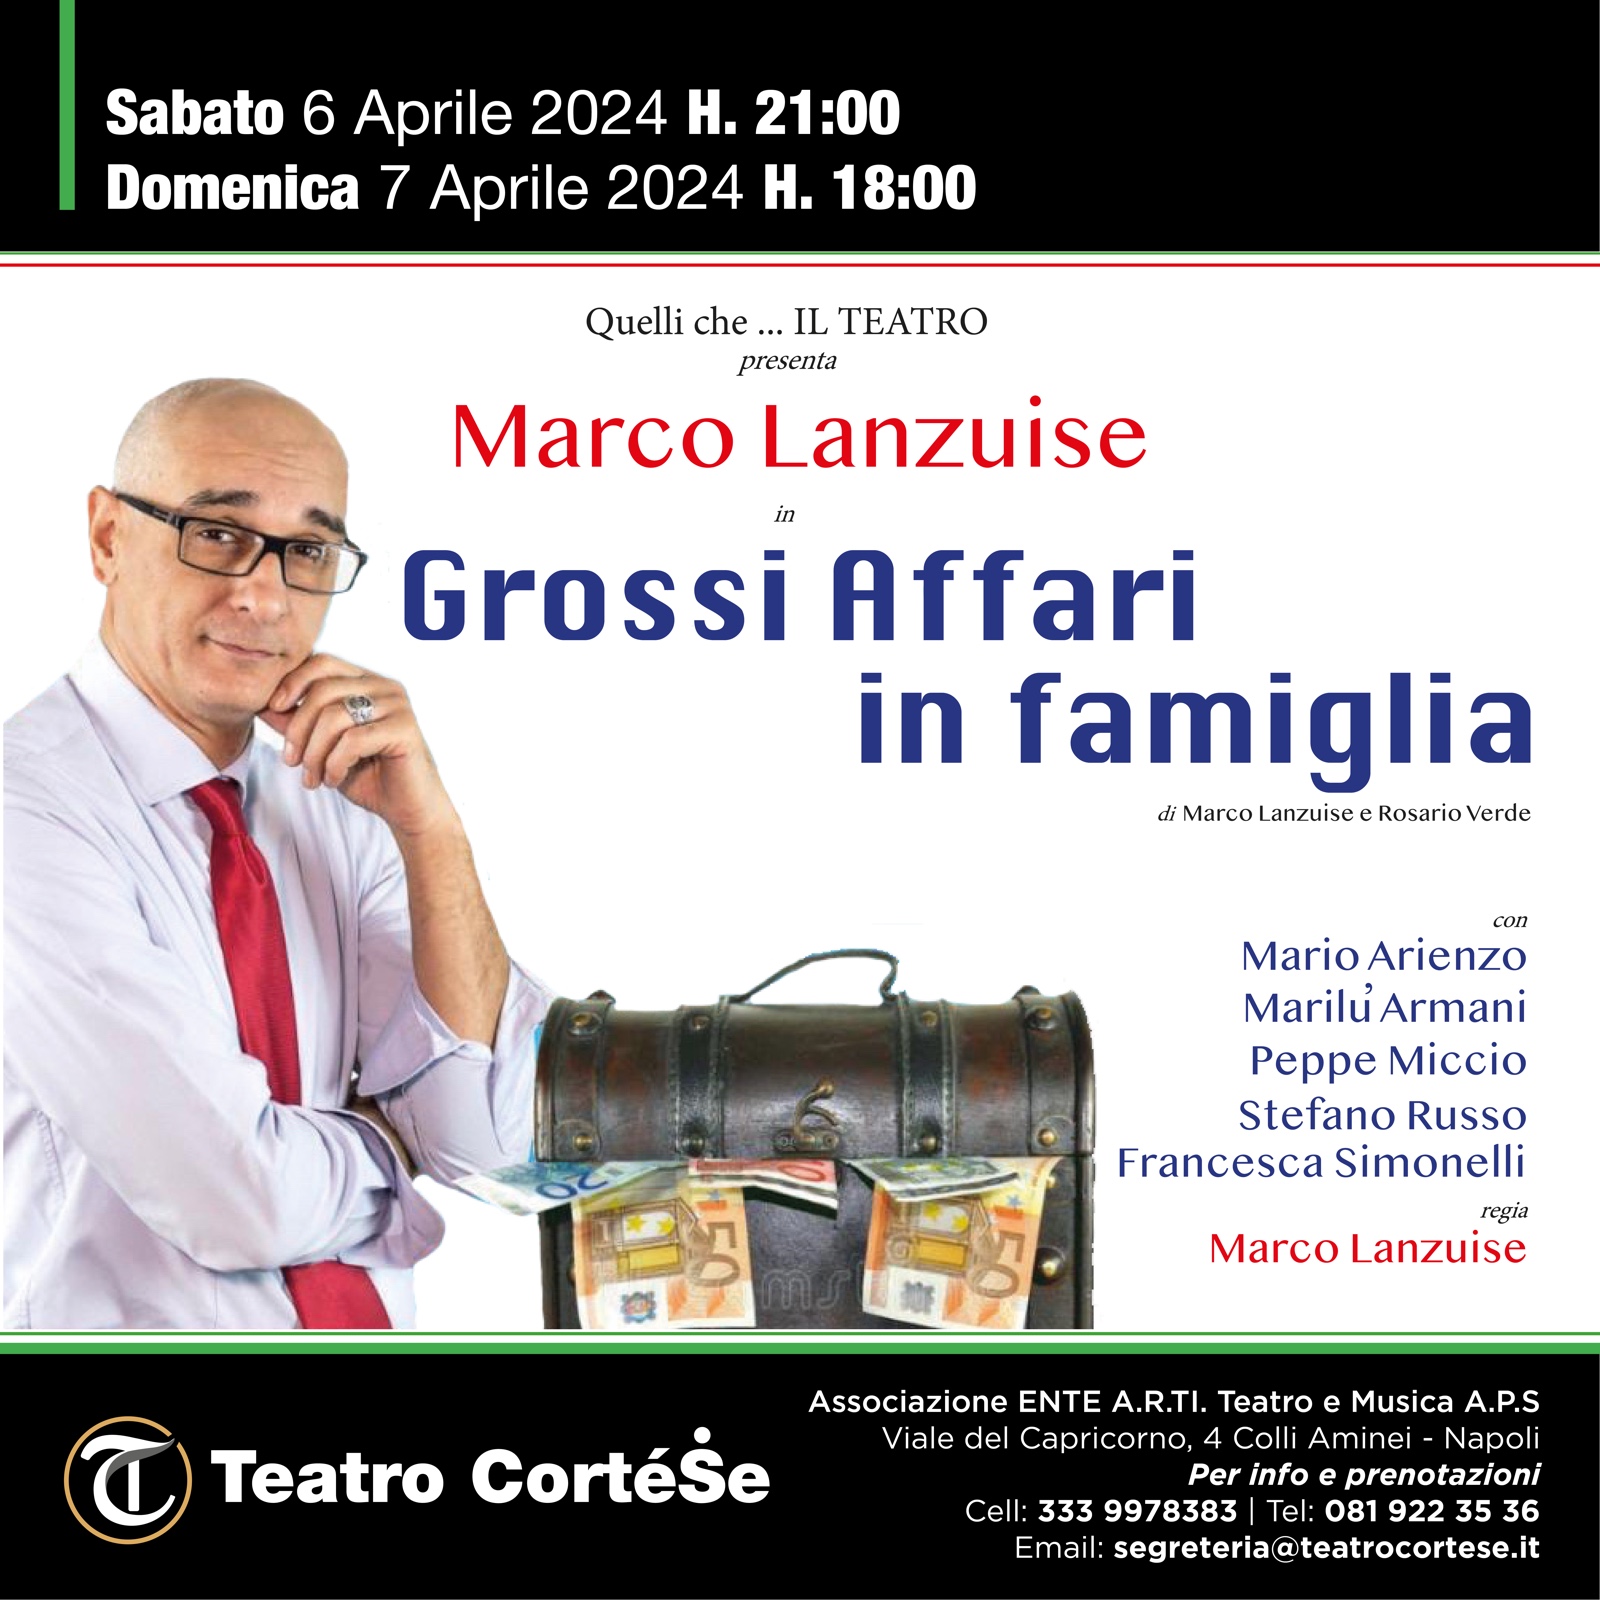 Marco Lanzuise al Teatro CortéSe con la commedia Grossi affari in famiglia